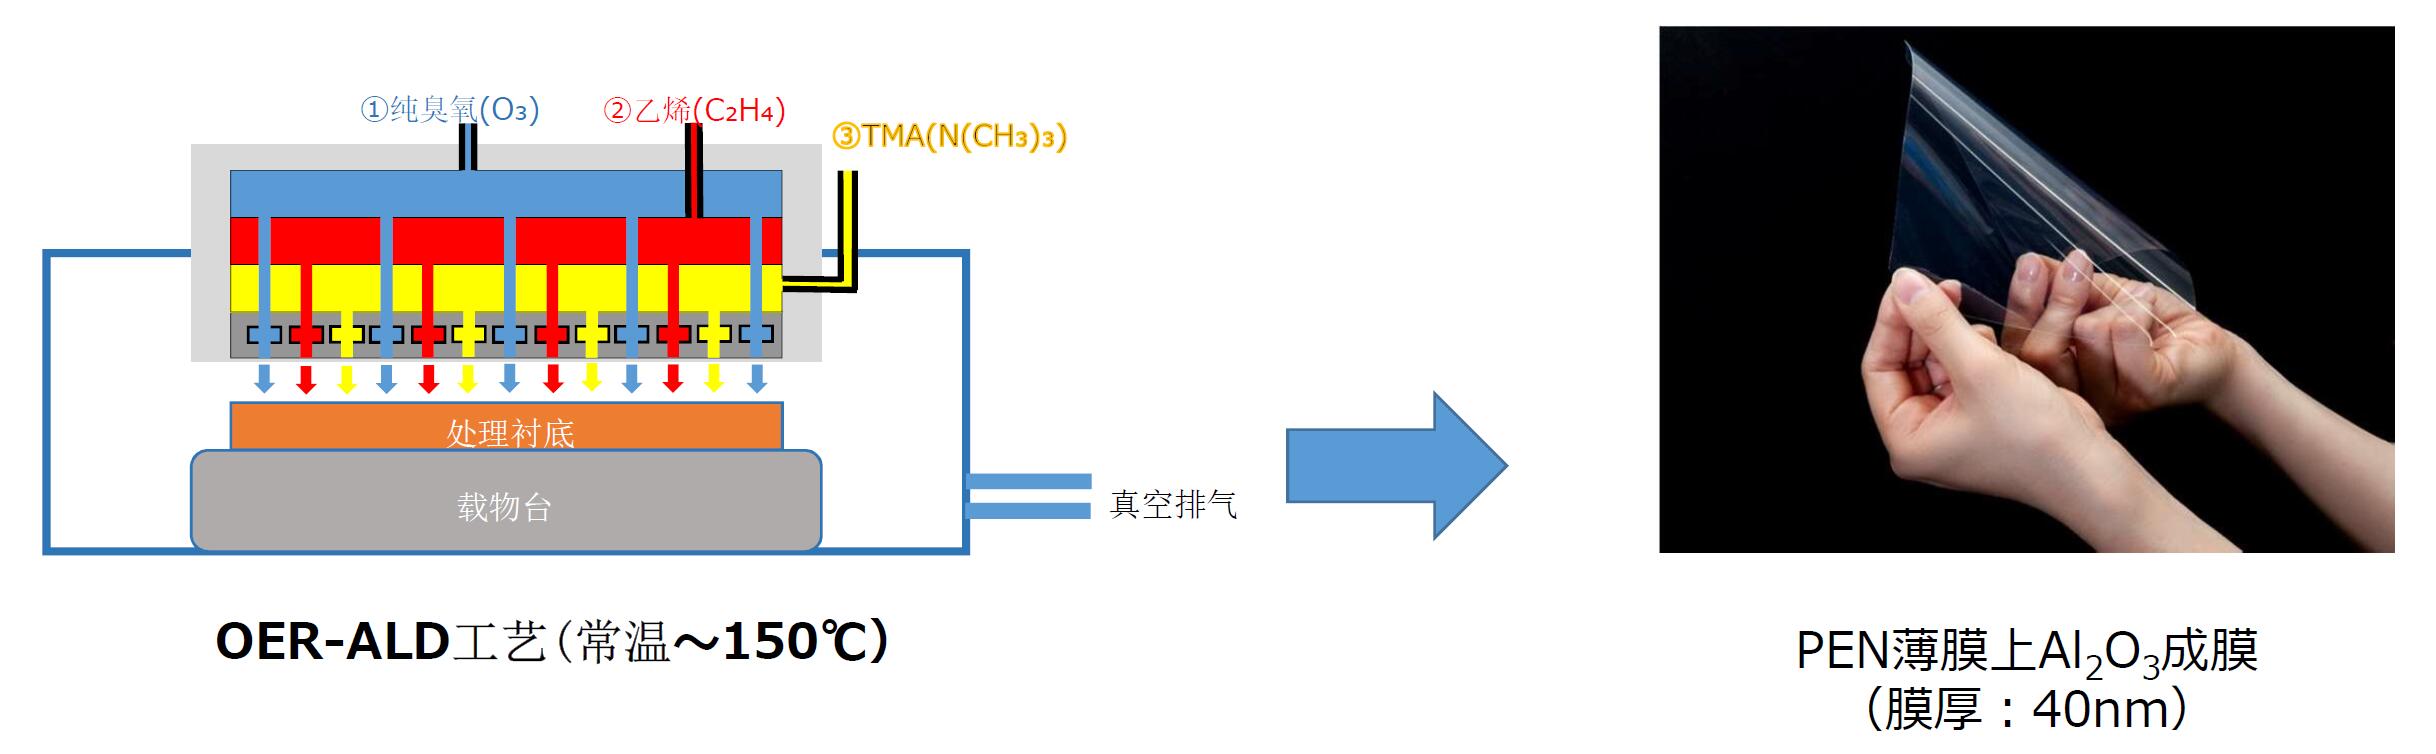 薄膜上常温成膜方案(图1)